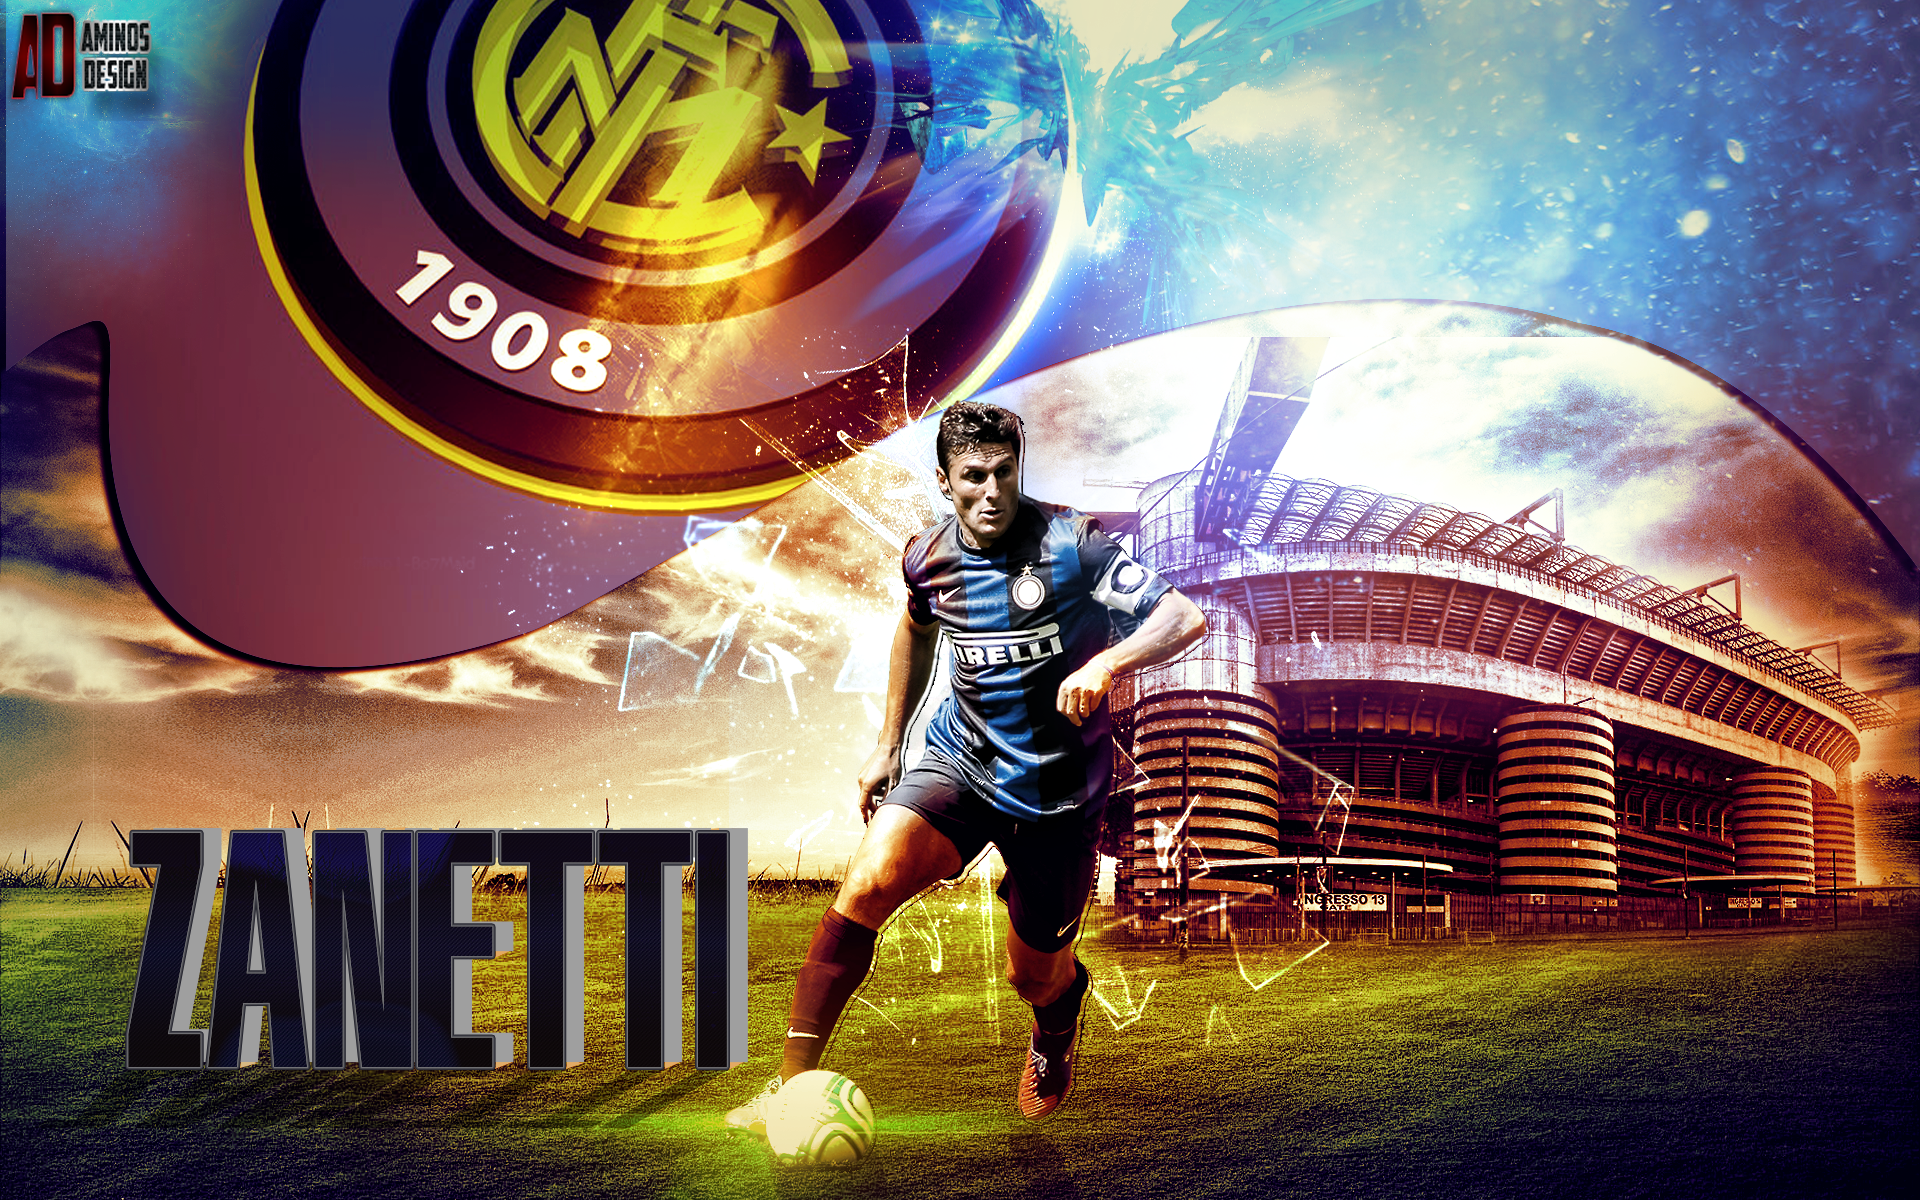 Javier Zanetti là một trong những cầu thủ huyền thoại của Inter Milan. Anh đã giúp đội bóng này giành được nhiều danh hiệu quan trọng nhất trong lịch sử của họ. Javier Zanetti là biểu tượng cho sự tận tụy và tinh thần thể thao, một người đáng ngưỡng mộ. Xem hình ảnh liên quan để tìm hiểu thêm về anh.